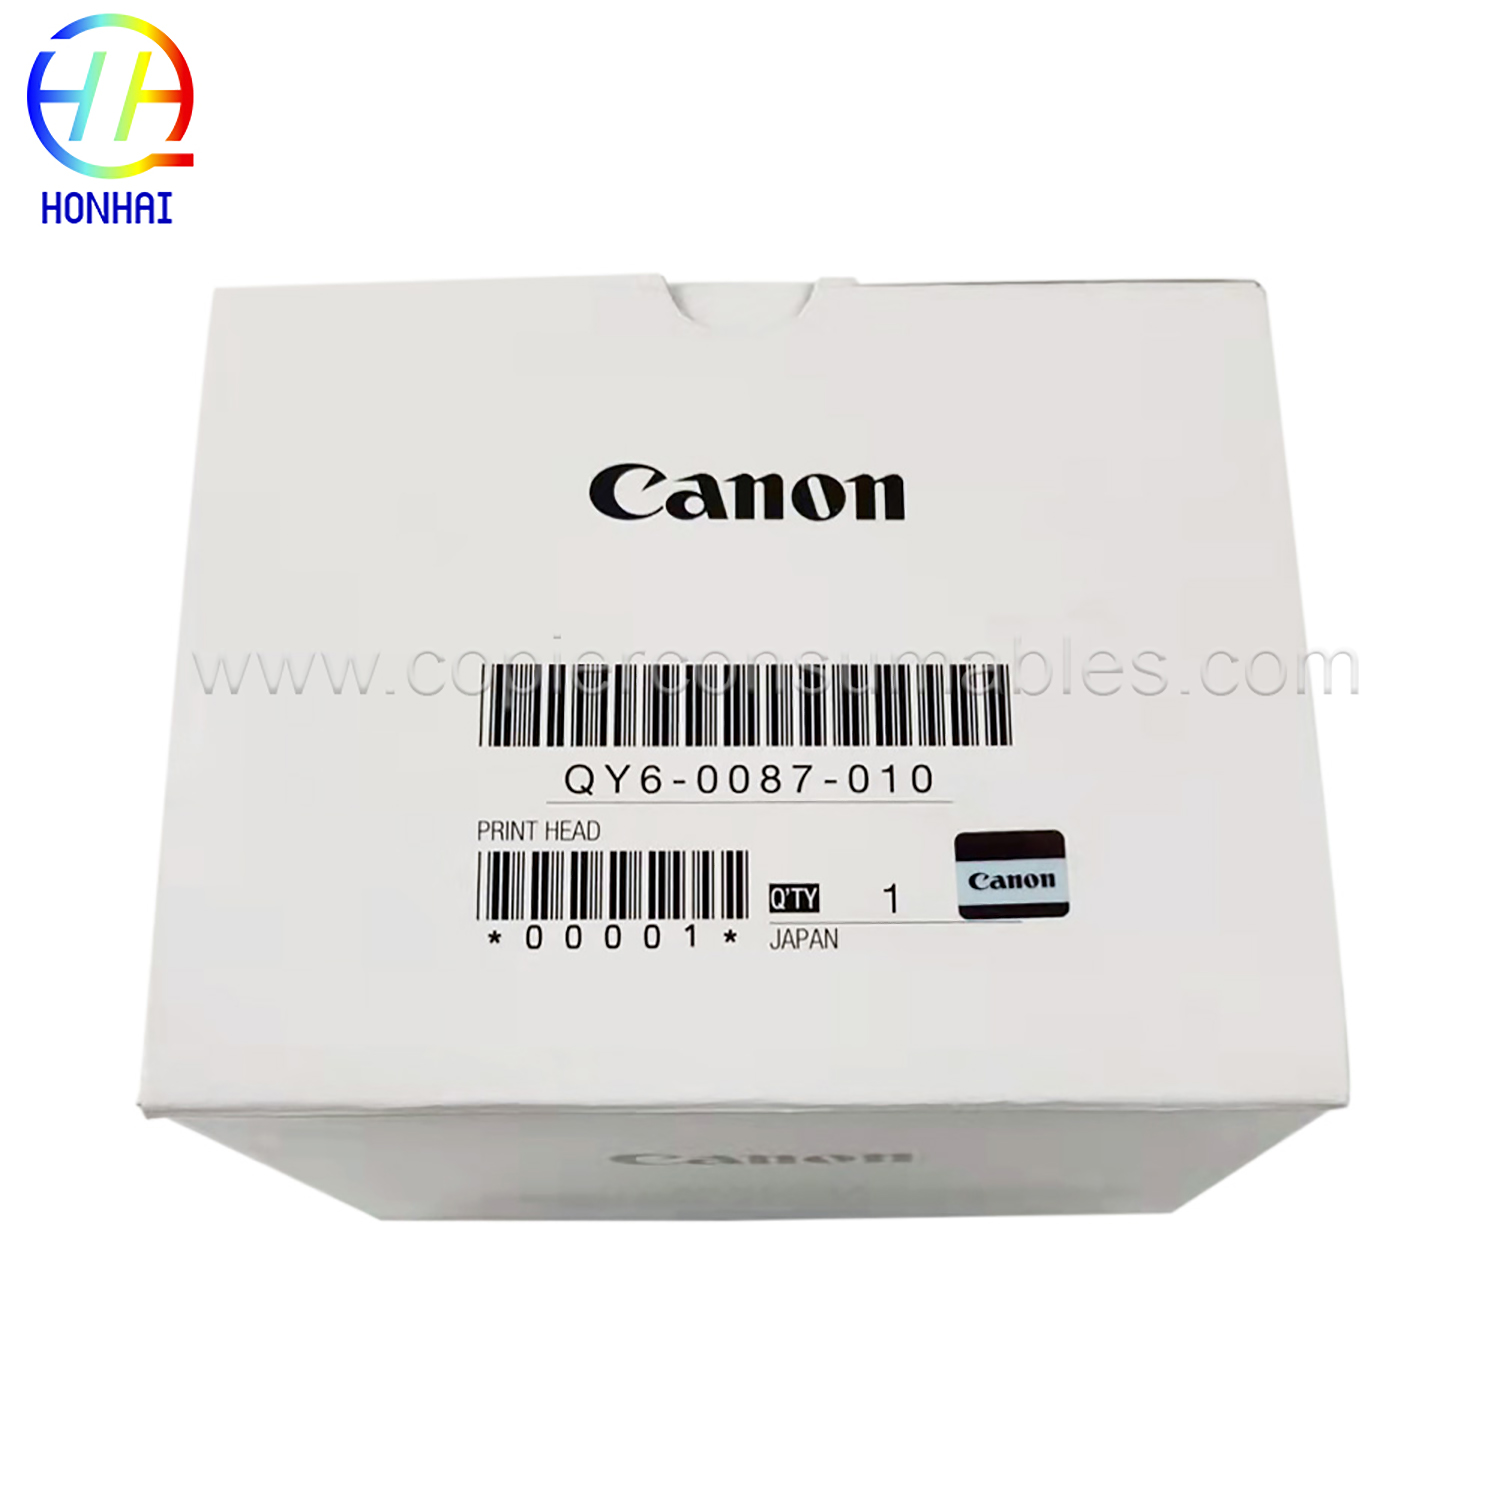 Tulostuspää mallille CANON QY6-0087-000 Maxify ib4020 mb2020 mb2320 mb5020 (1) 拷贝